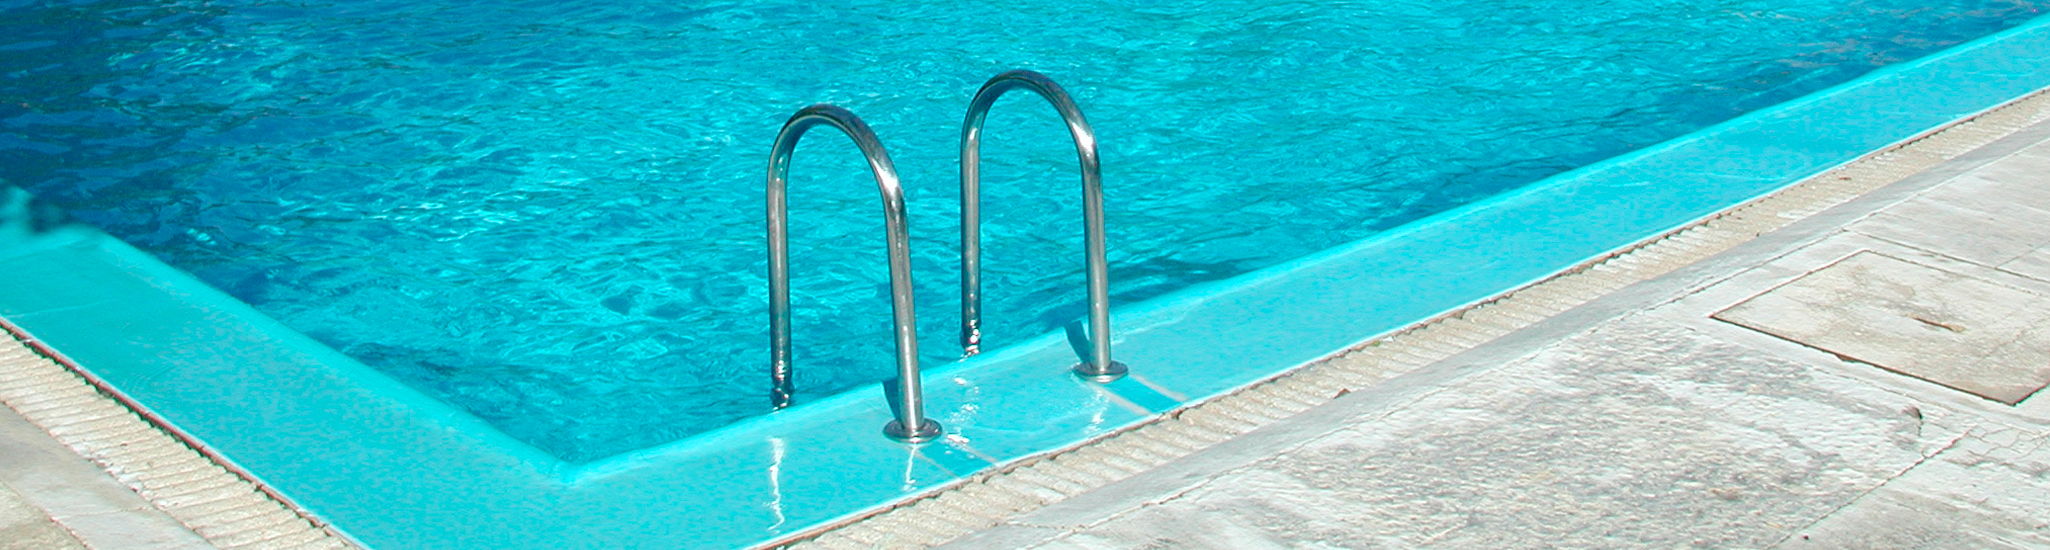 PolarGreen Mantenimiento y reparación de piscinas